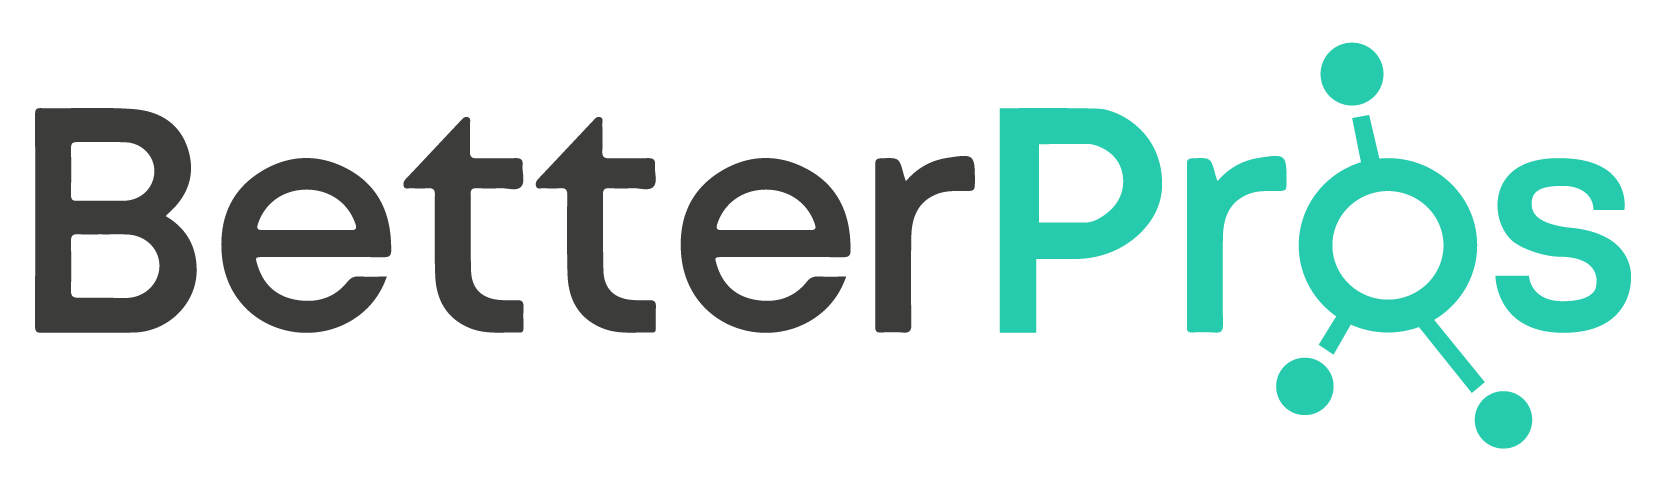 betterpros logo